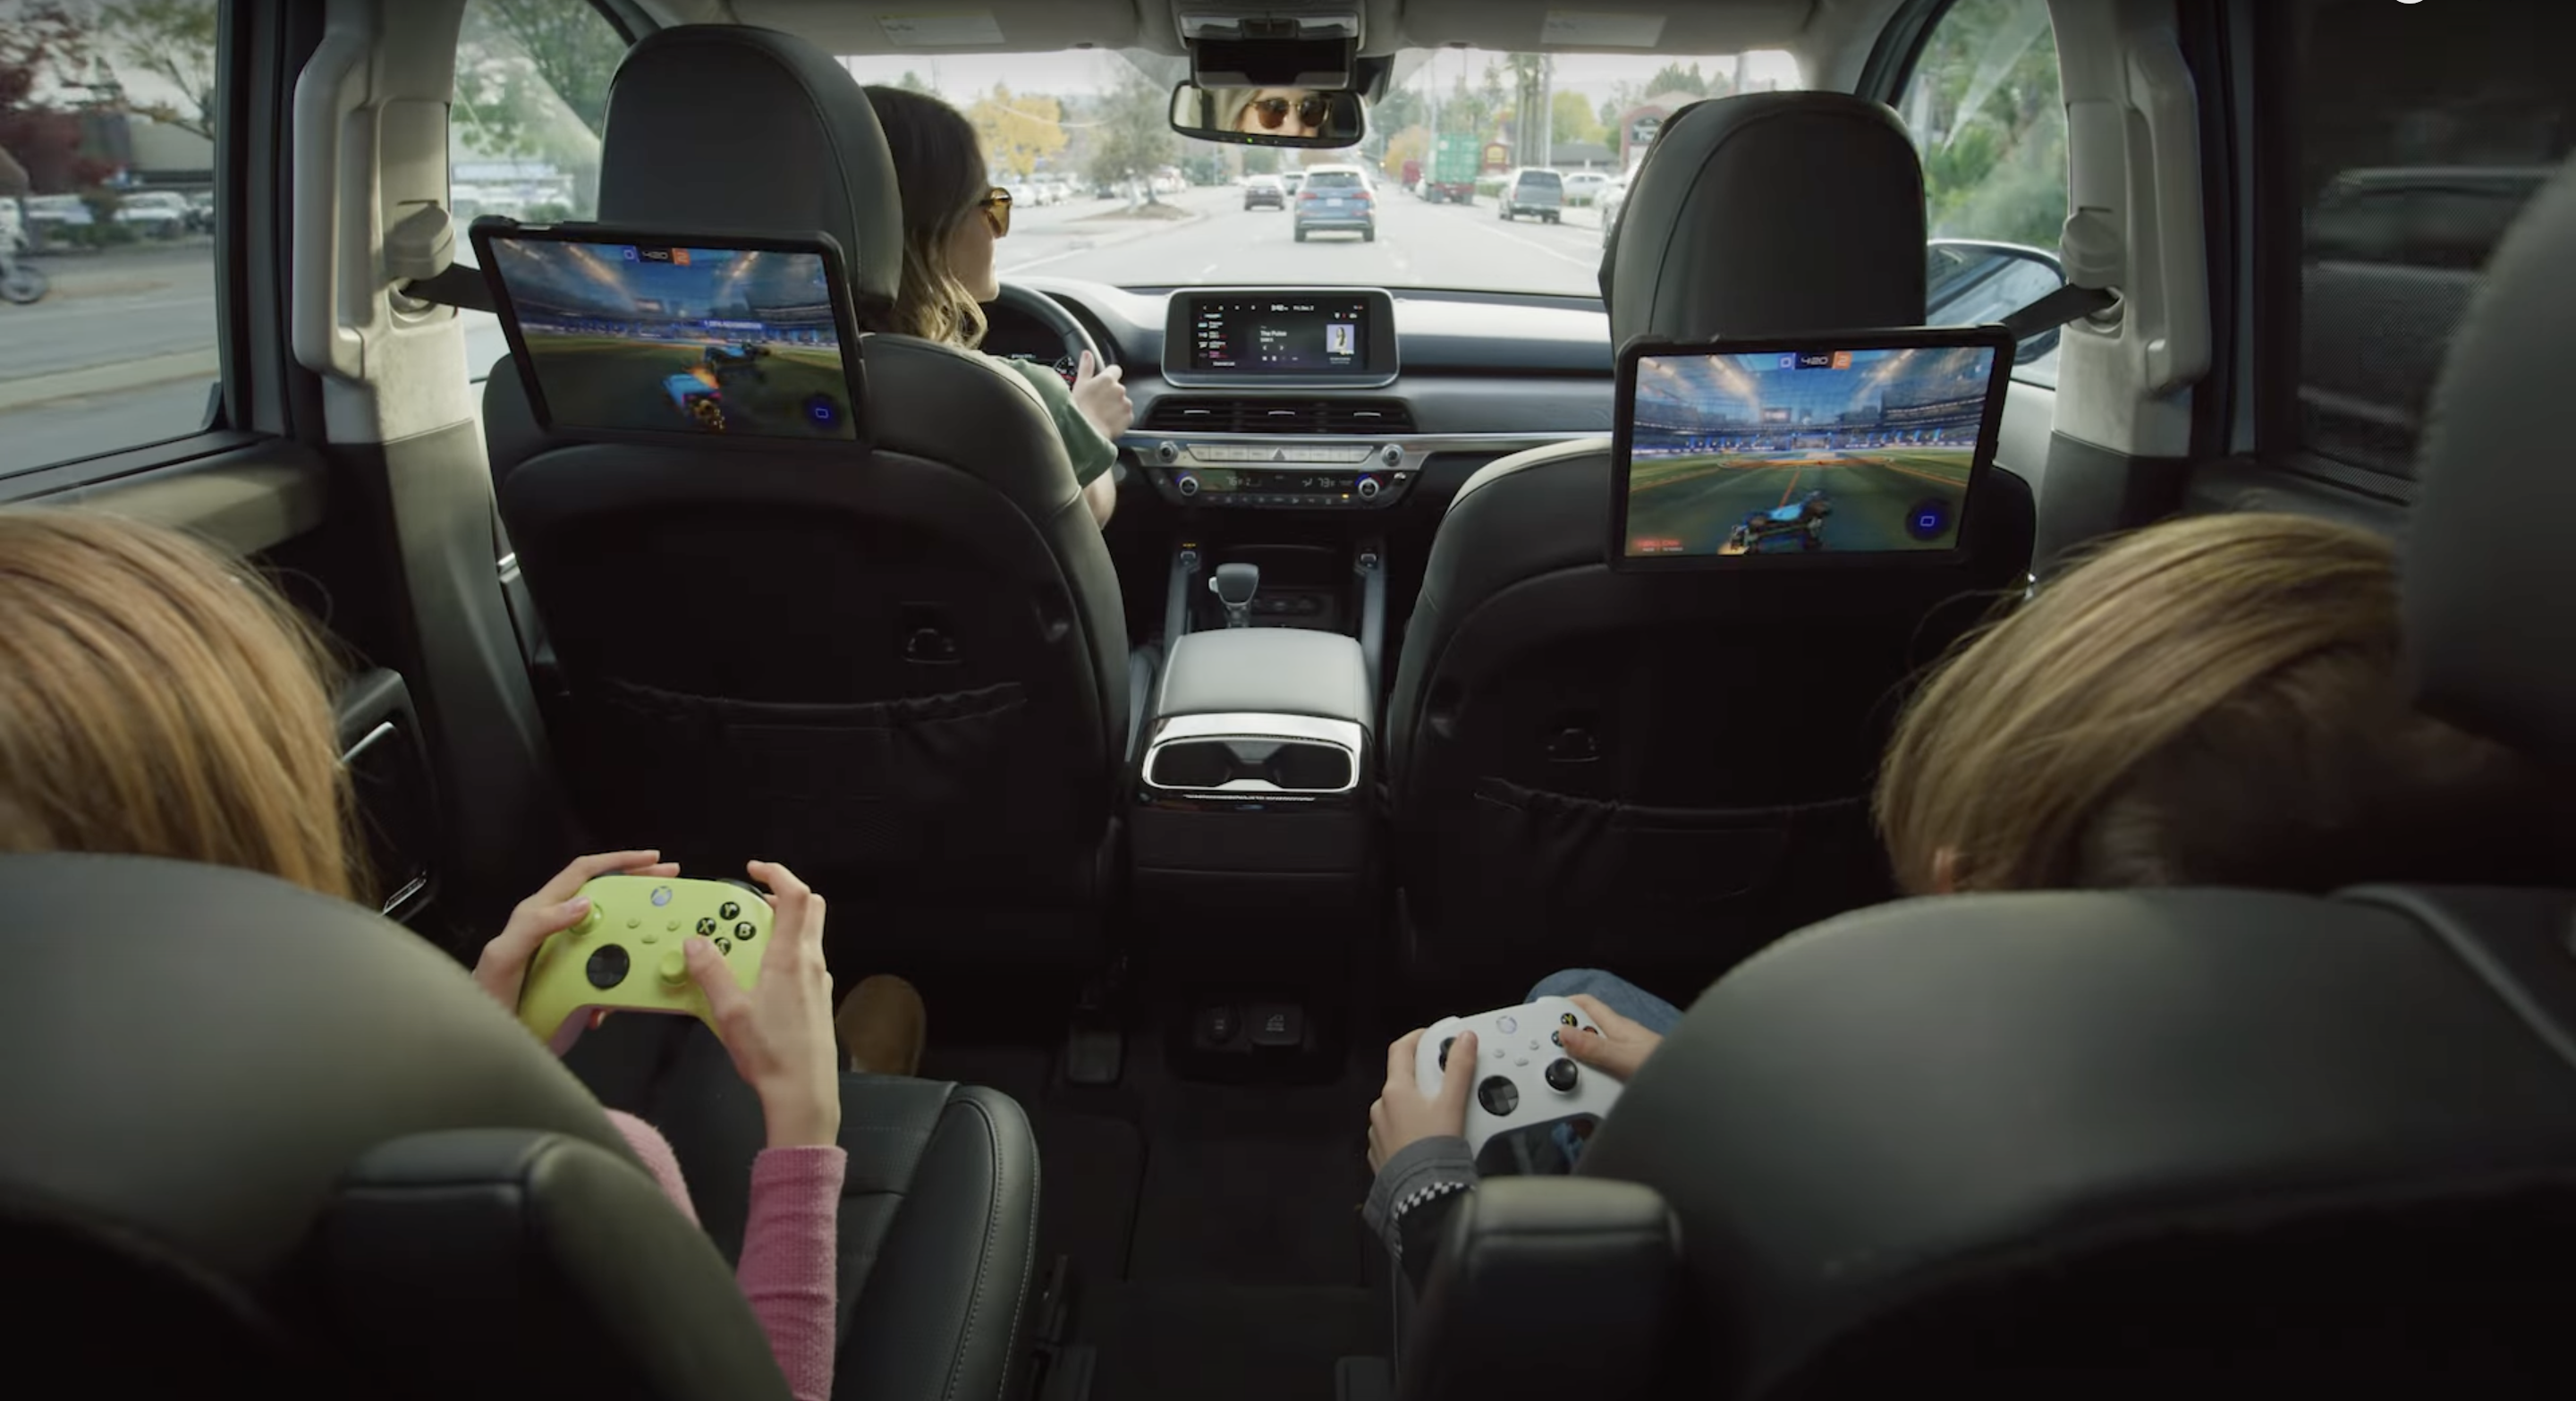 Los coches Polestar, BYD, Hyundai, Kia y Genesis con Android Automotive a bordo serán compatibles con el servicio de juegos en la nube Nvidia GeForce Now